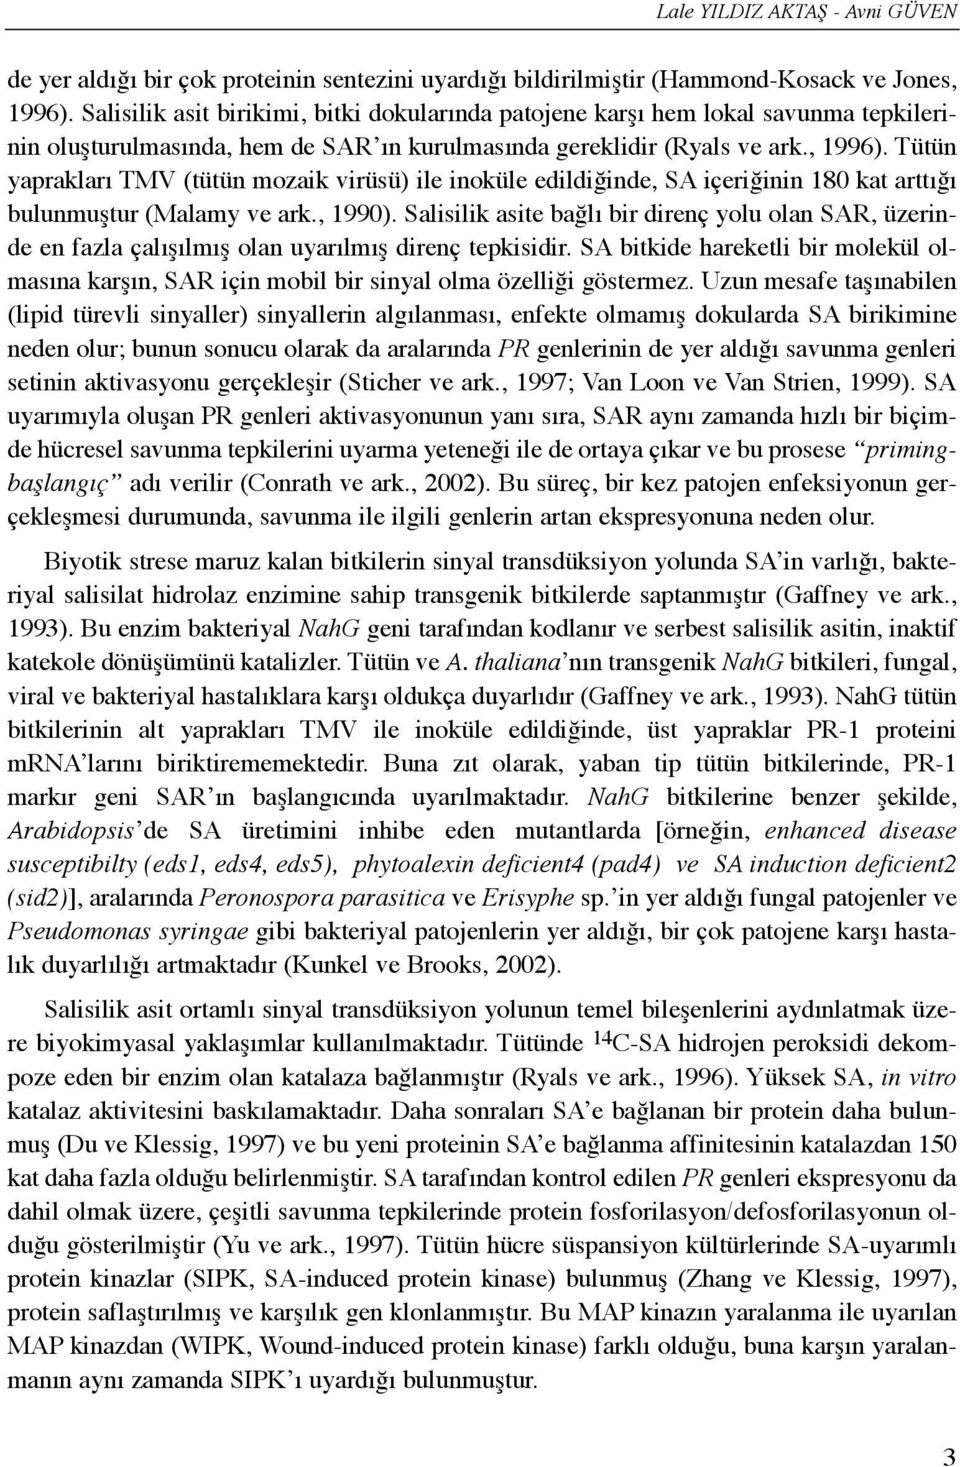 Tütün yapraklarõ TMV (tütün mozaik virüsü) ile inoküle edildiğinde, SA içeriğinin 180 kat arttõğõ bulunmuştur (Malamy ve ark., 1990).